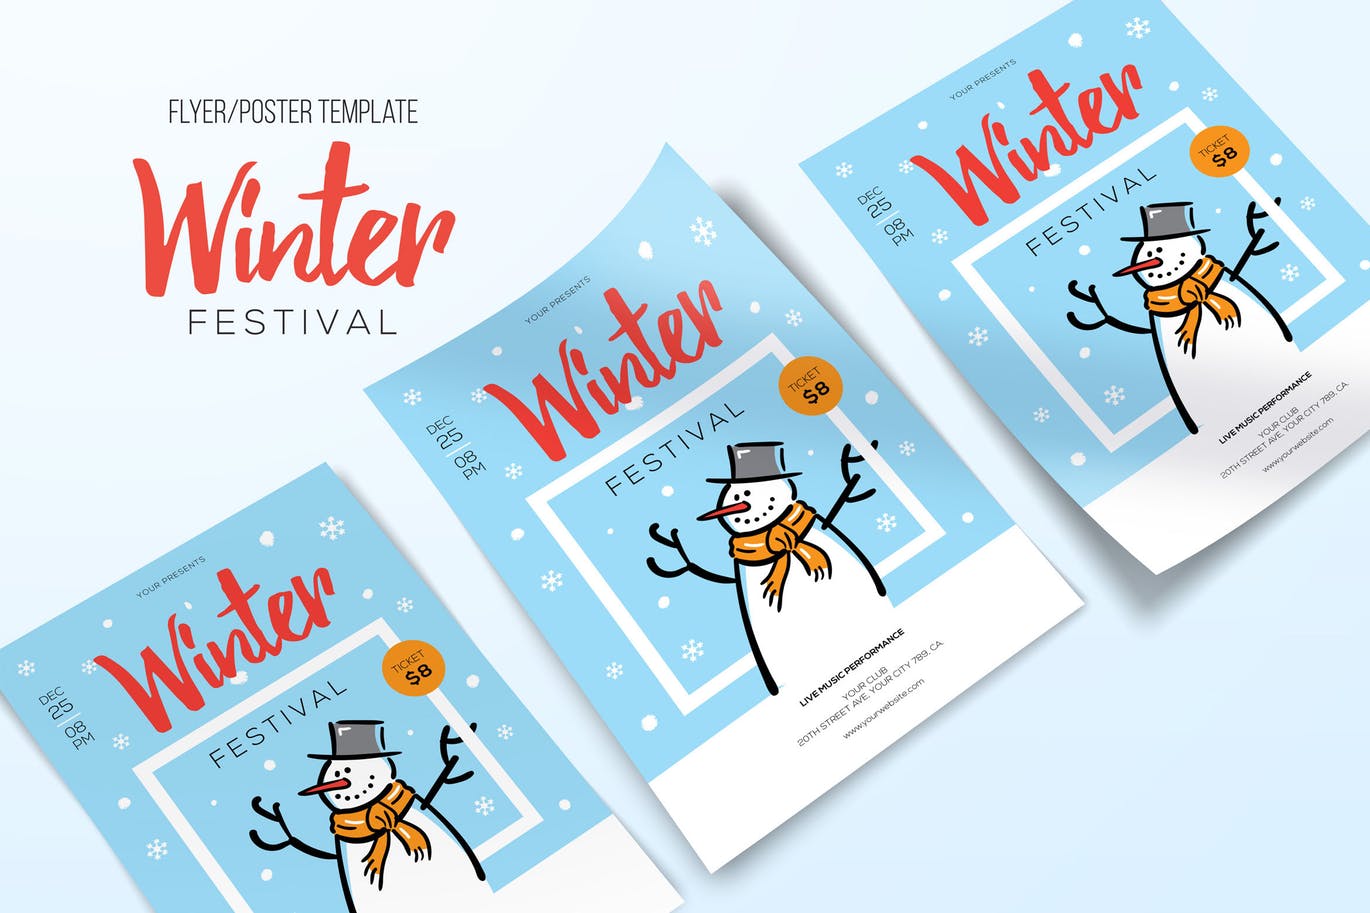 简笔画小雪人手绘图案冬天主题海报传单设计模板 Winter Festival插图